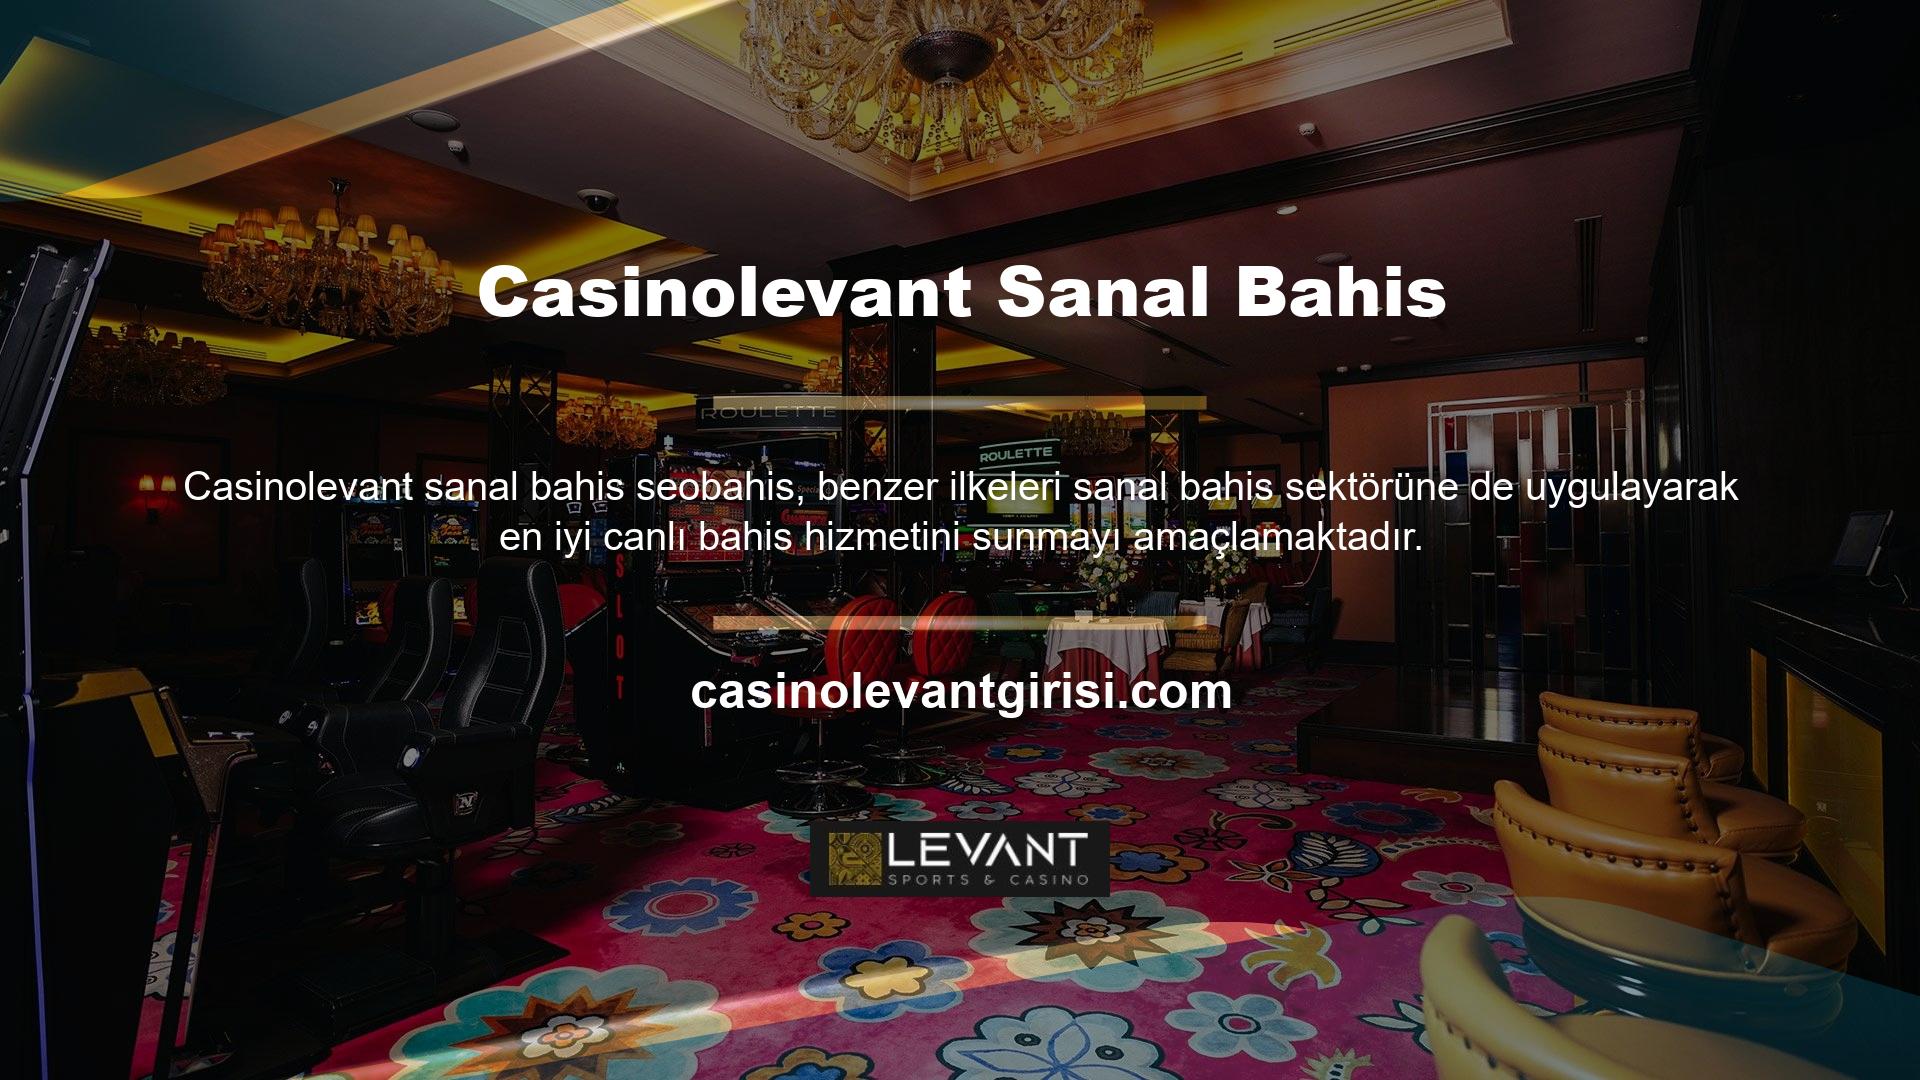 Casinolevant genellikle canlı bahis konusunda üyelere özel uzman tavsiyesi sağlar